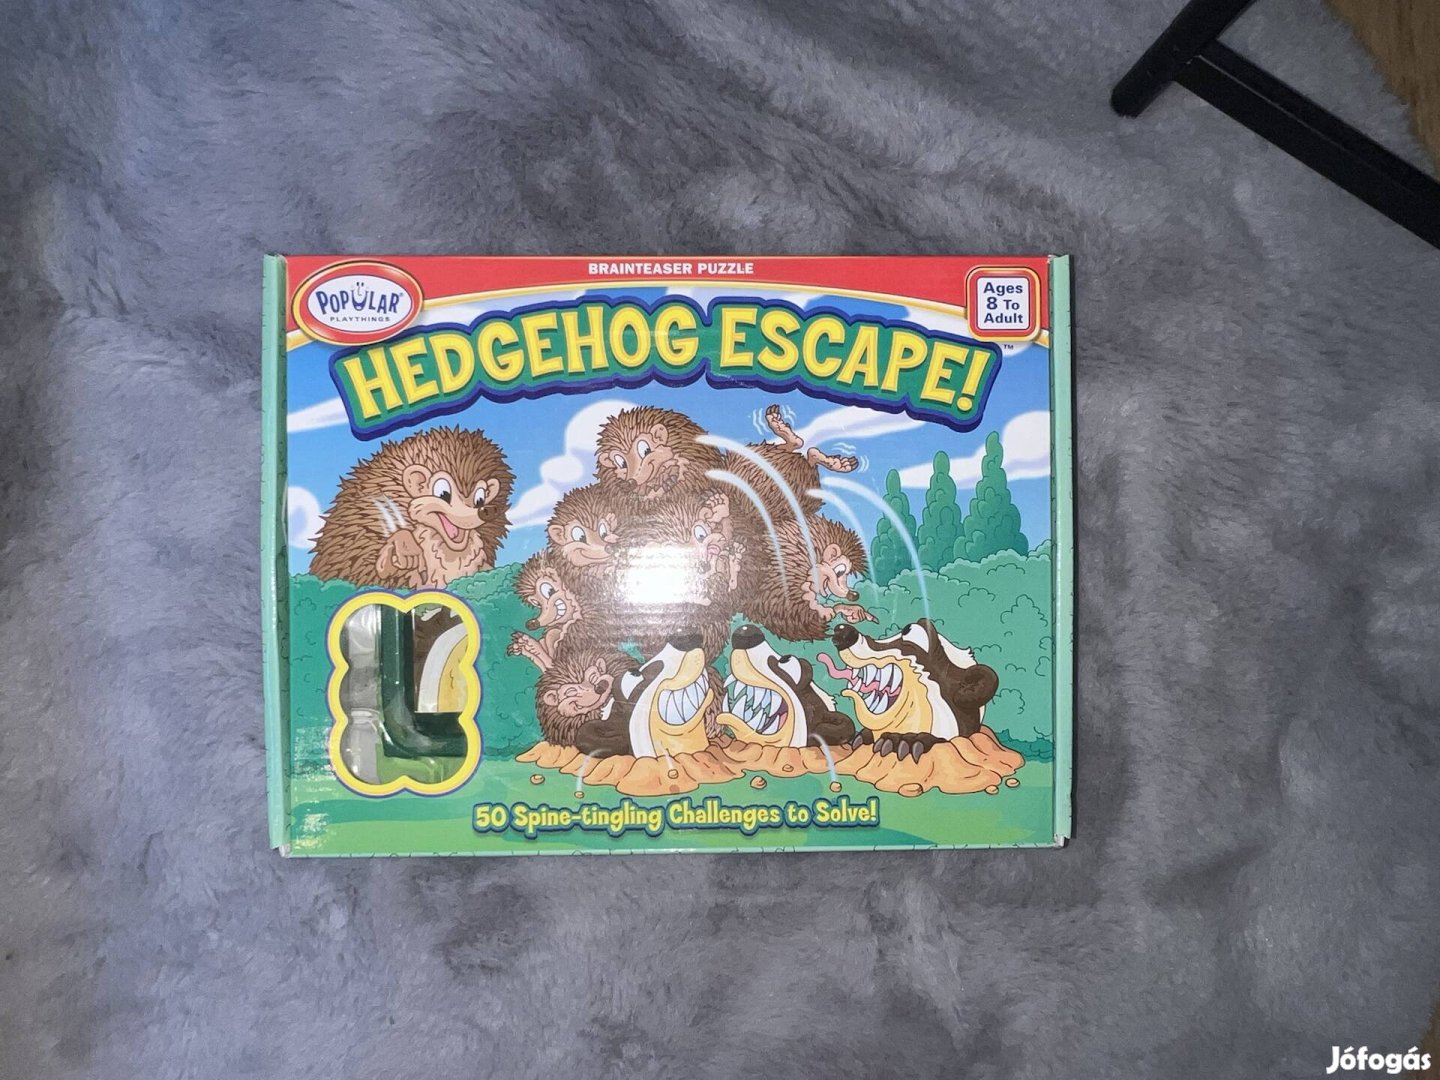 "Hedgehoge Escape " társasjáték 